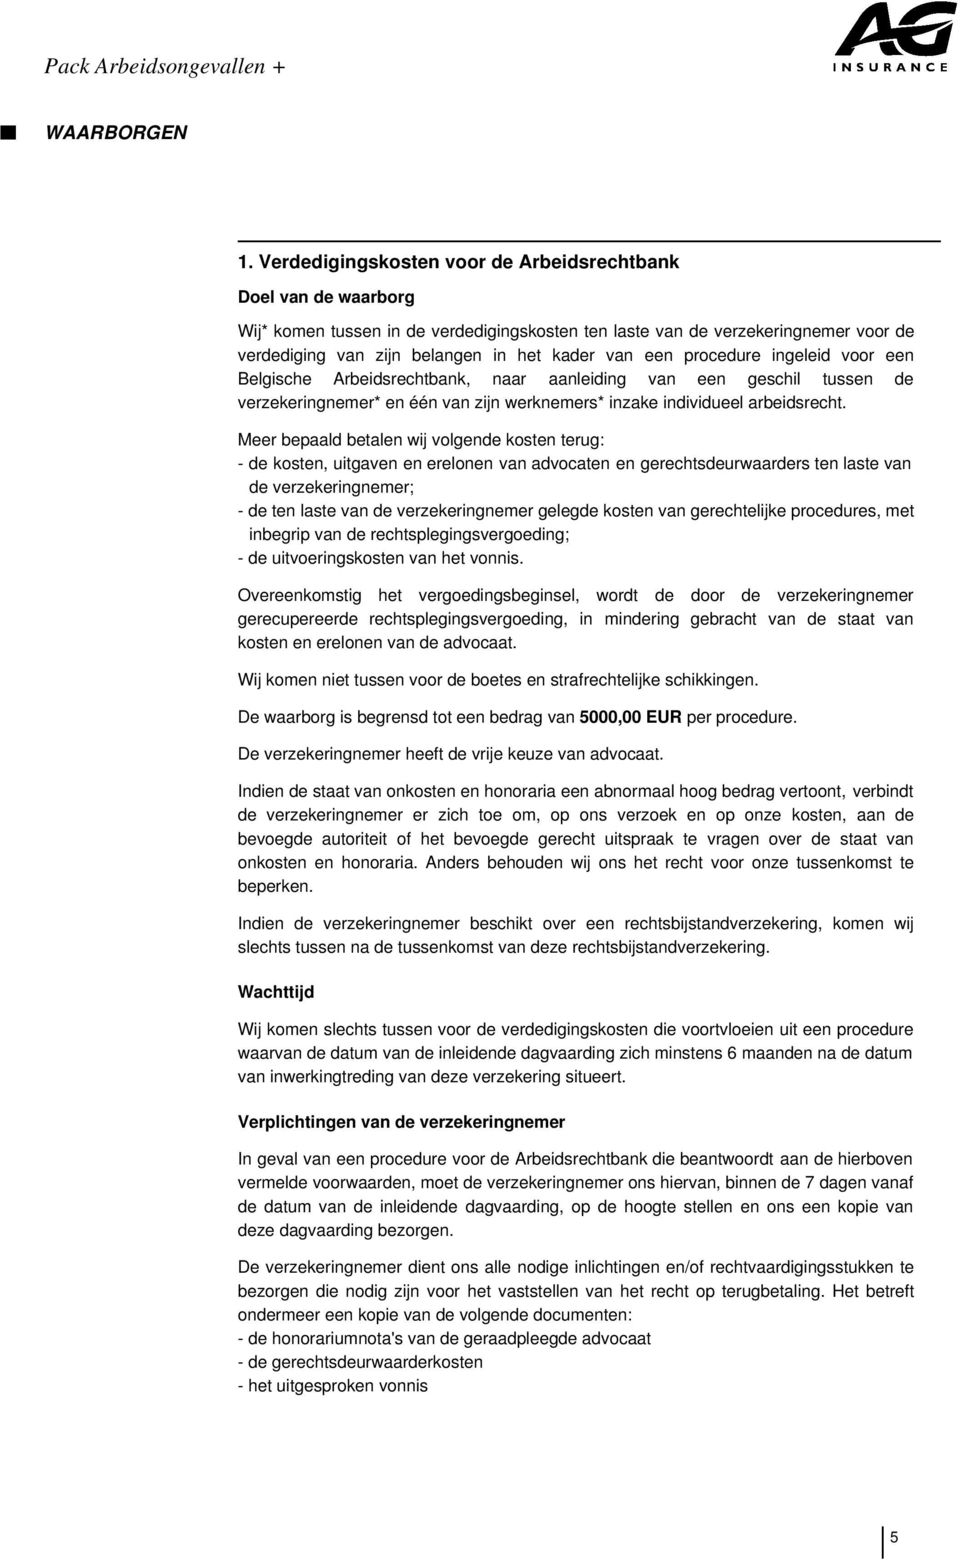 een procedure ingeleid voor een Belgische Arbeidsrechtbank, naar aanleiding van een geschil tussen de verzekeringnemer* en één van zijn werknemers* inzake individueel arbeidsrecht.